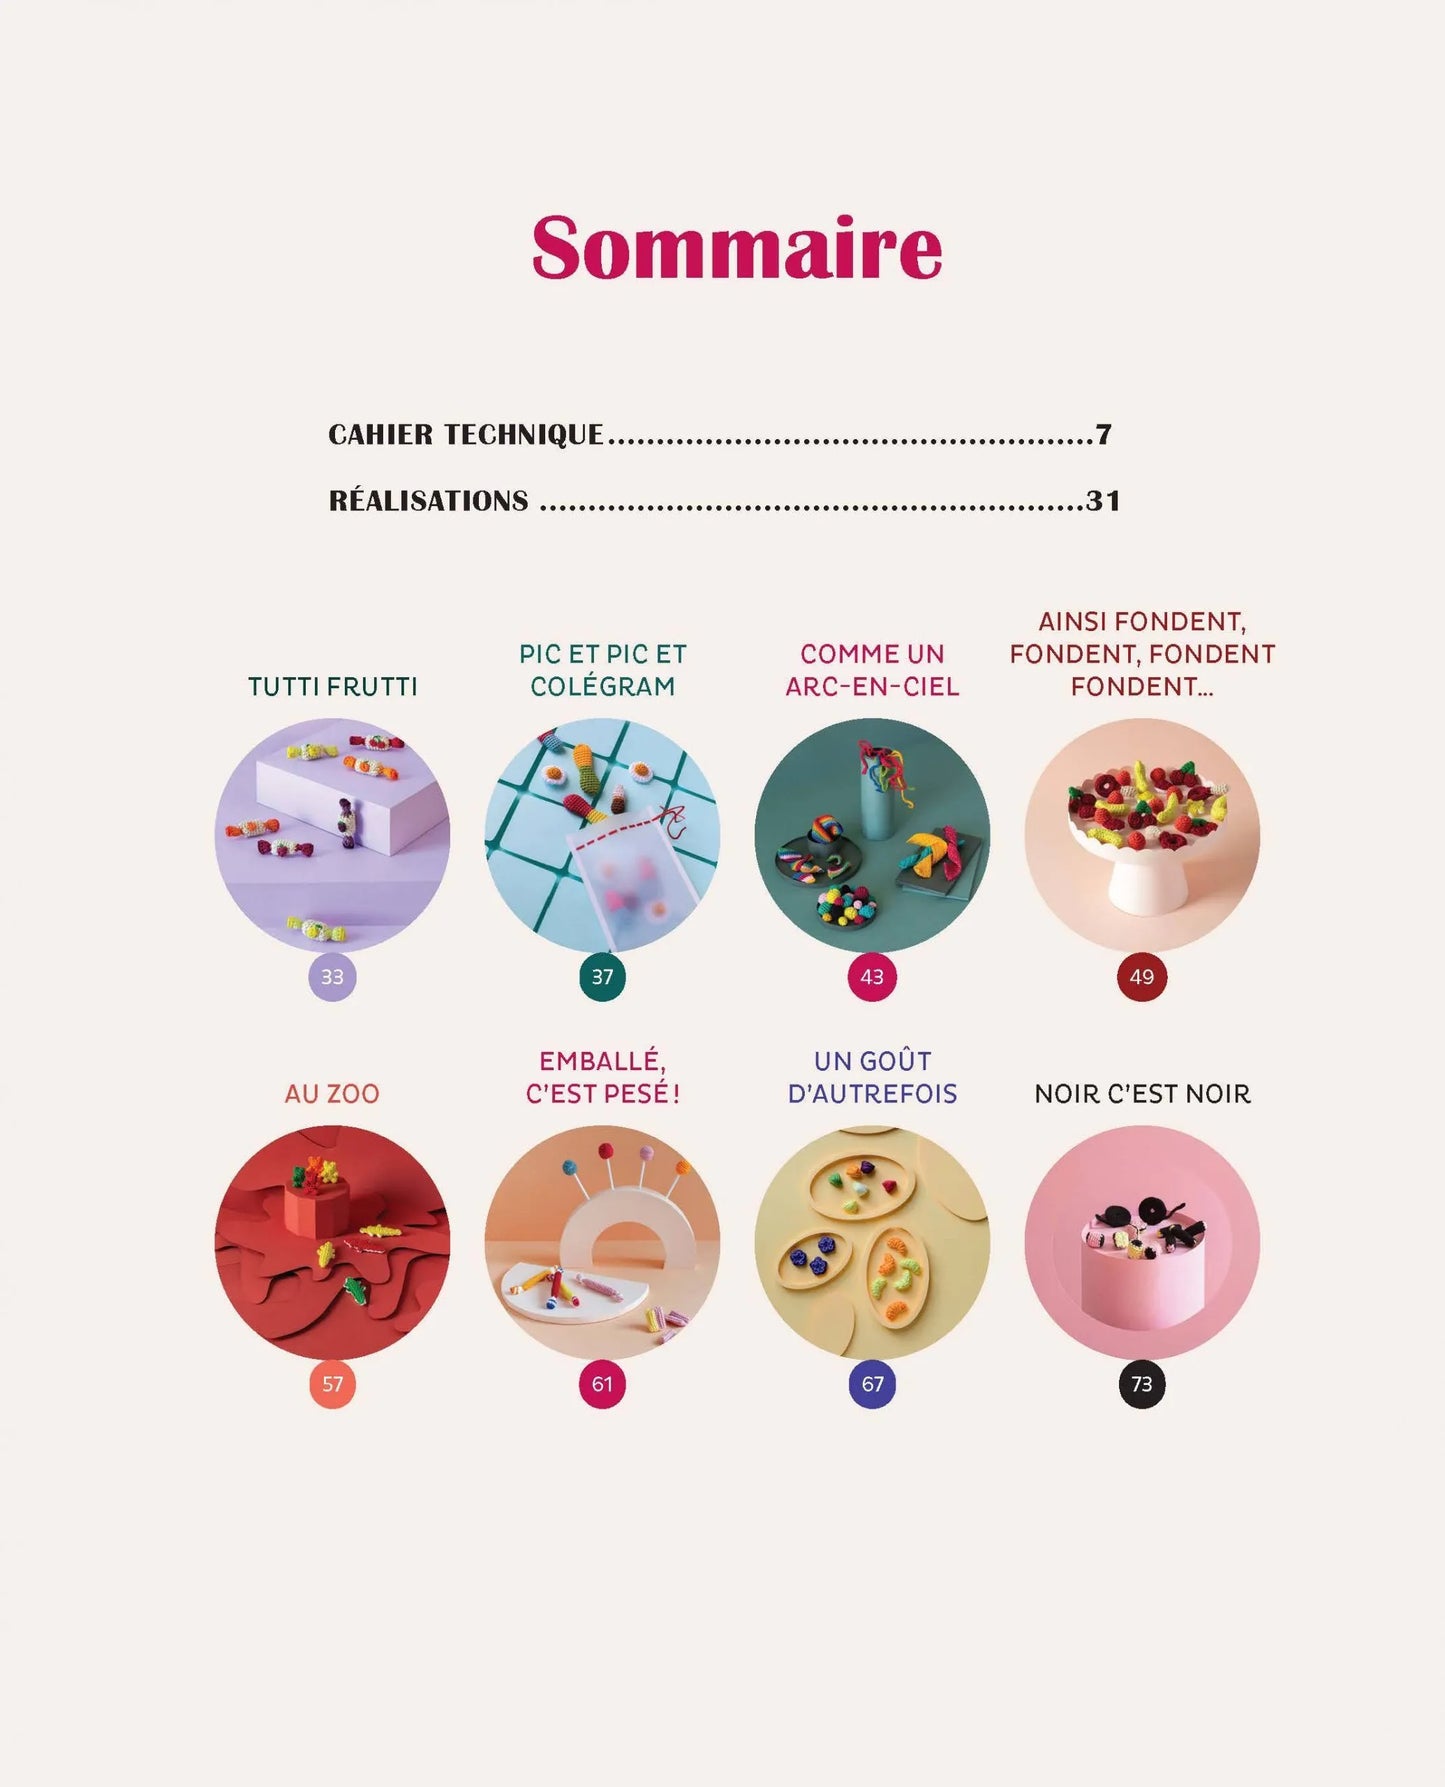 Mille et un bonbons au crochet - Camille Lepecq (@1000et1etoiles)